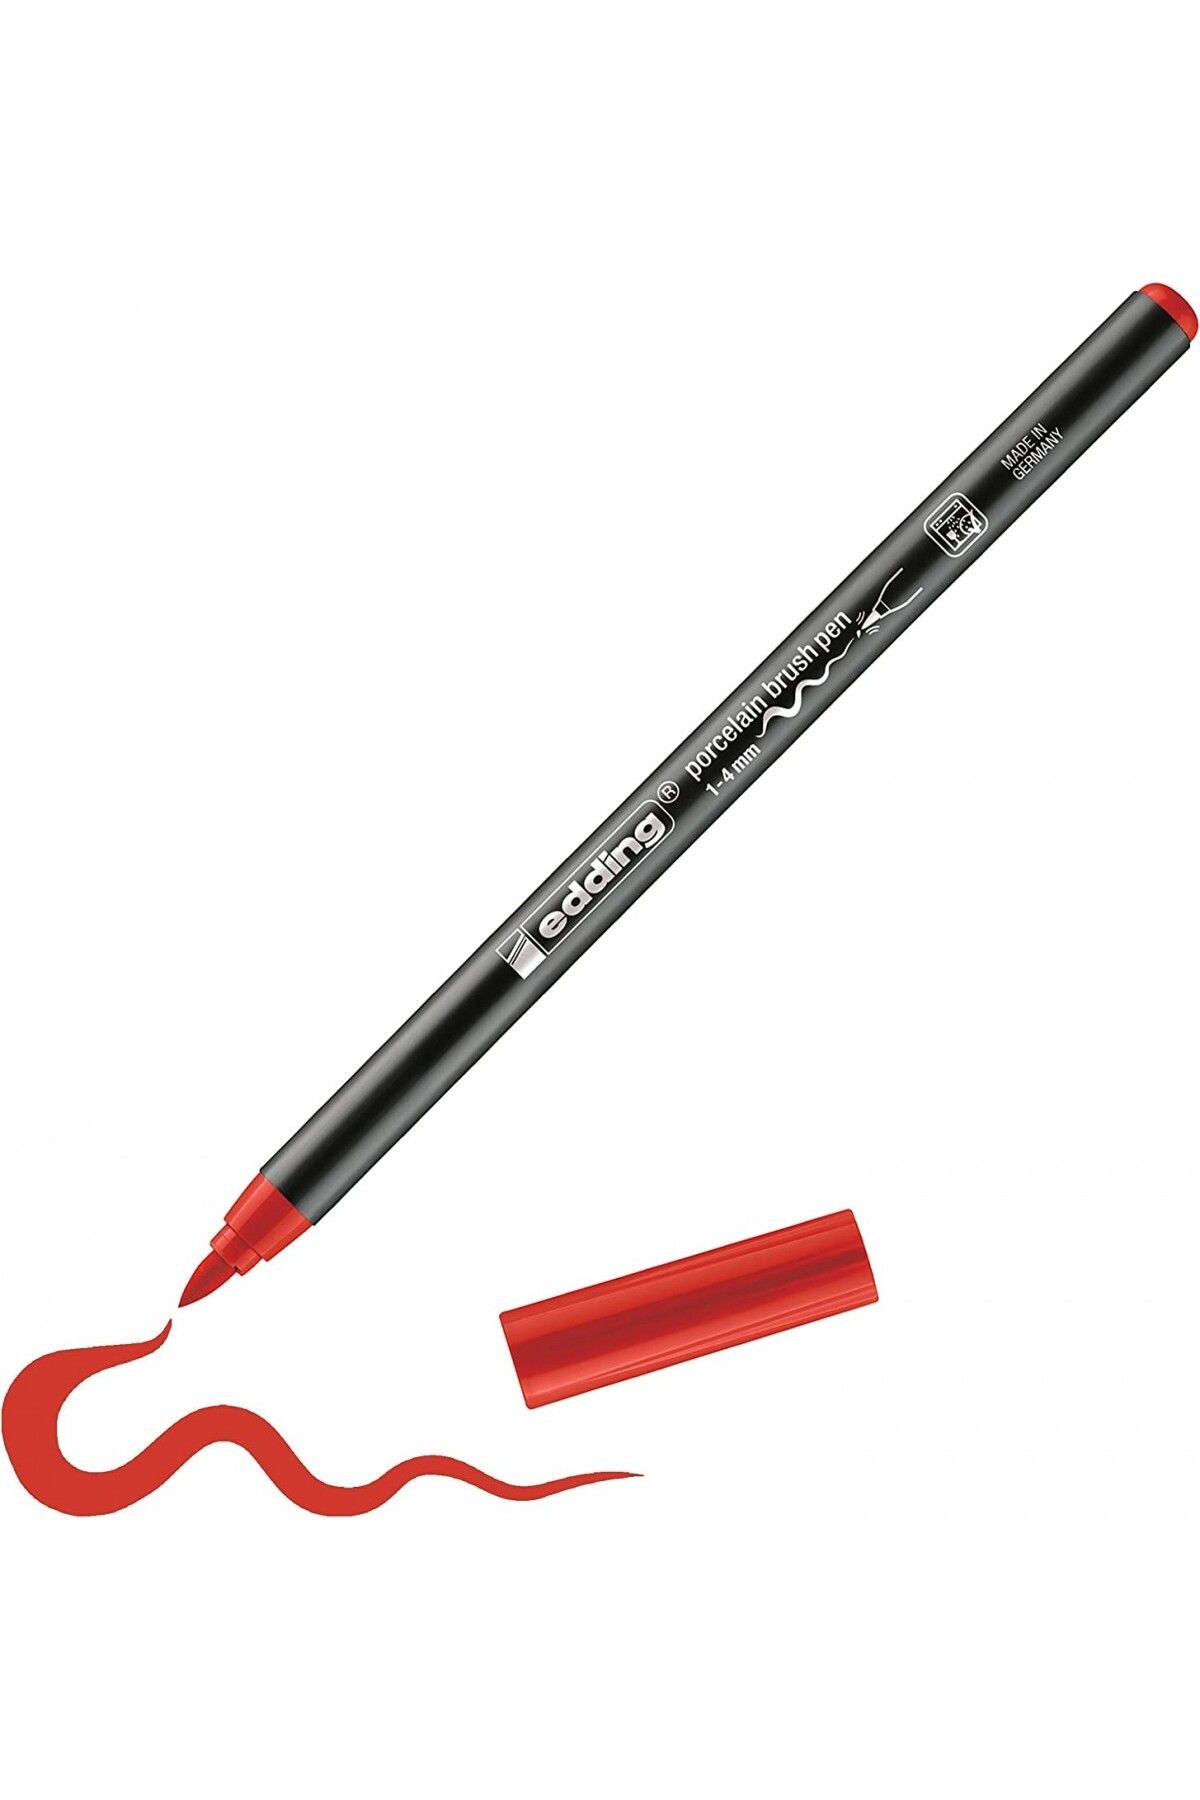 Edding Porcelain Brush Pen Porselen Kalemi Kırmızı / 002